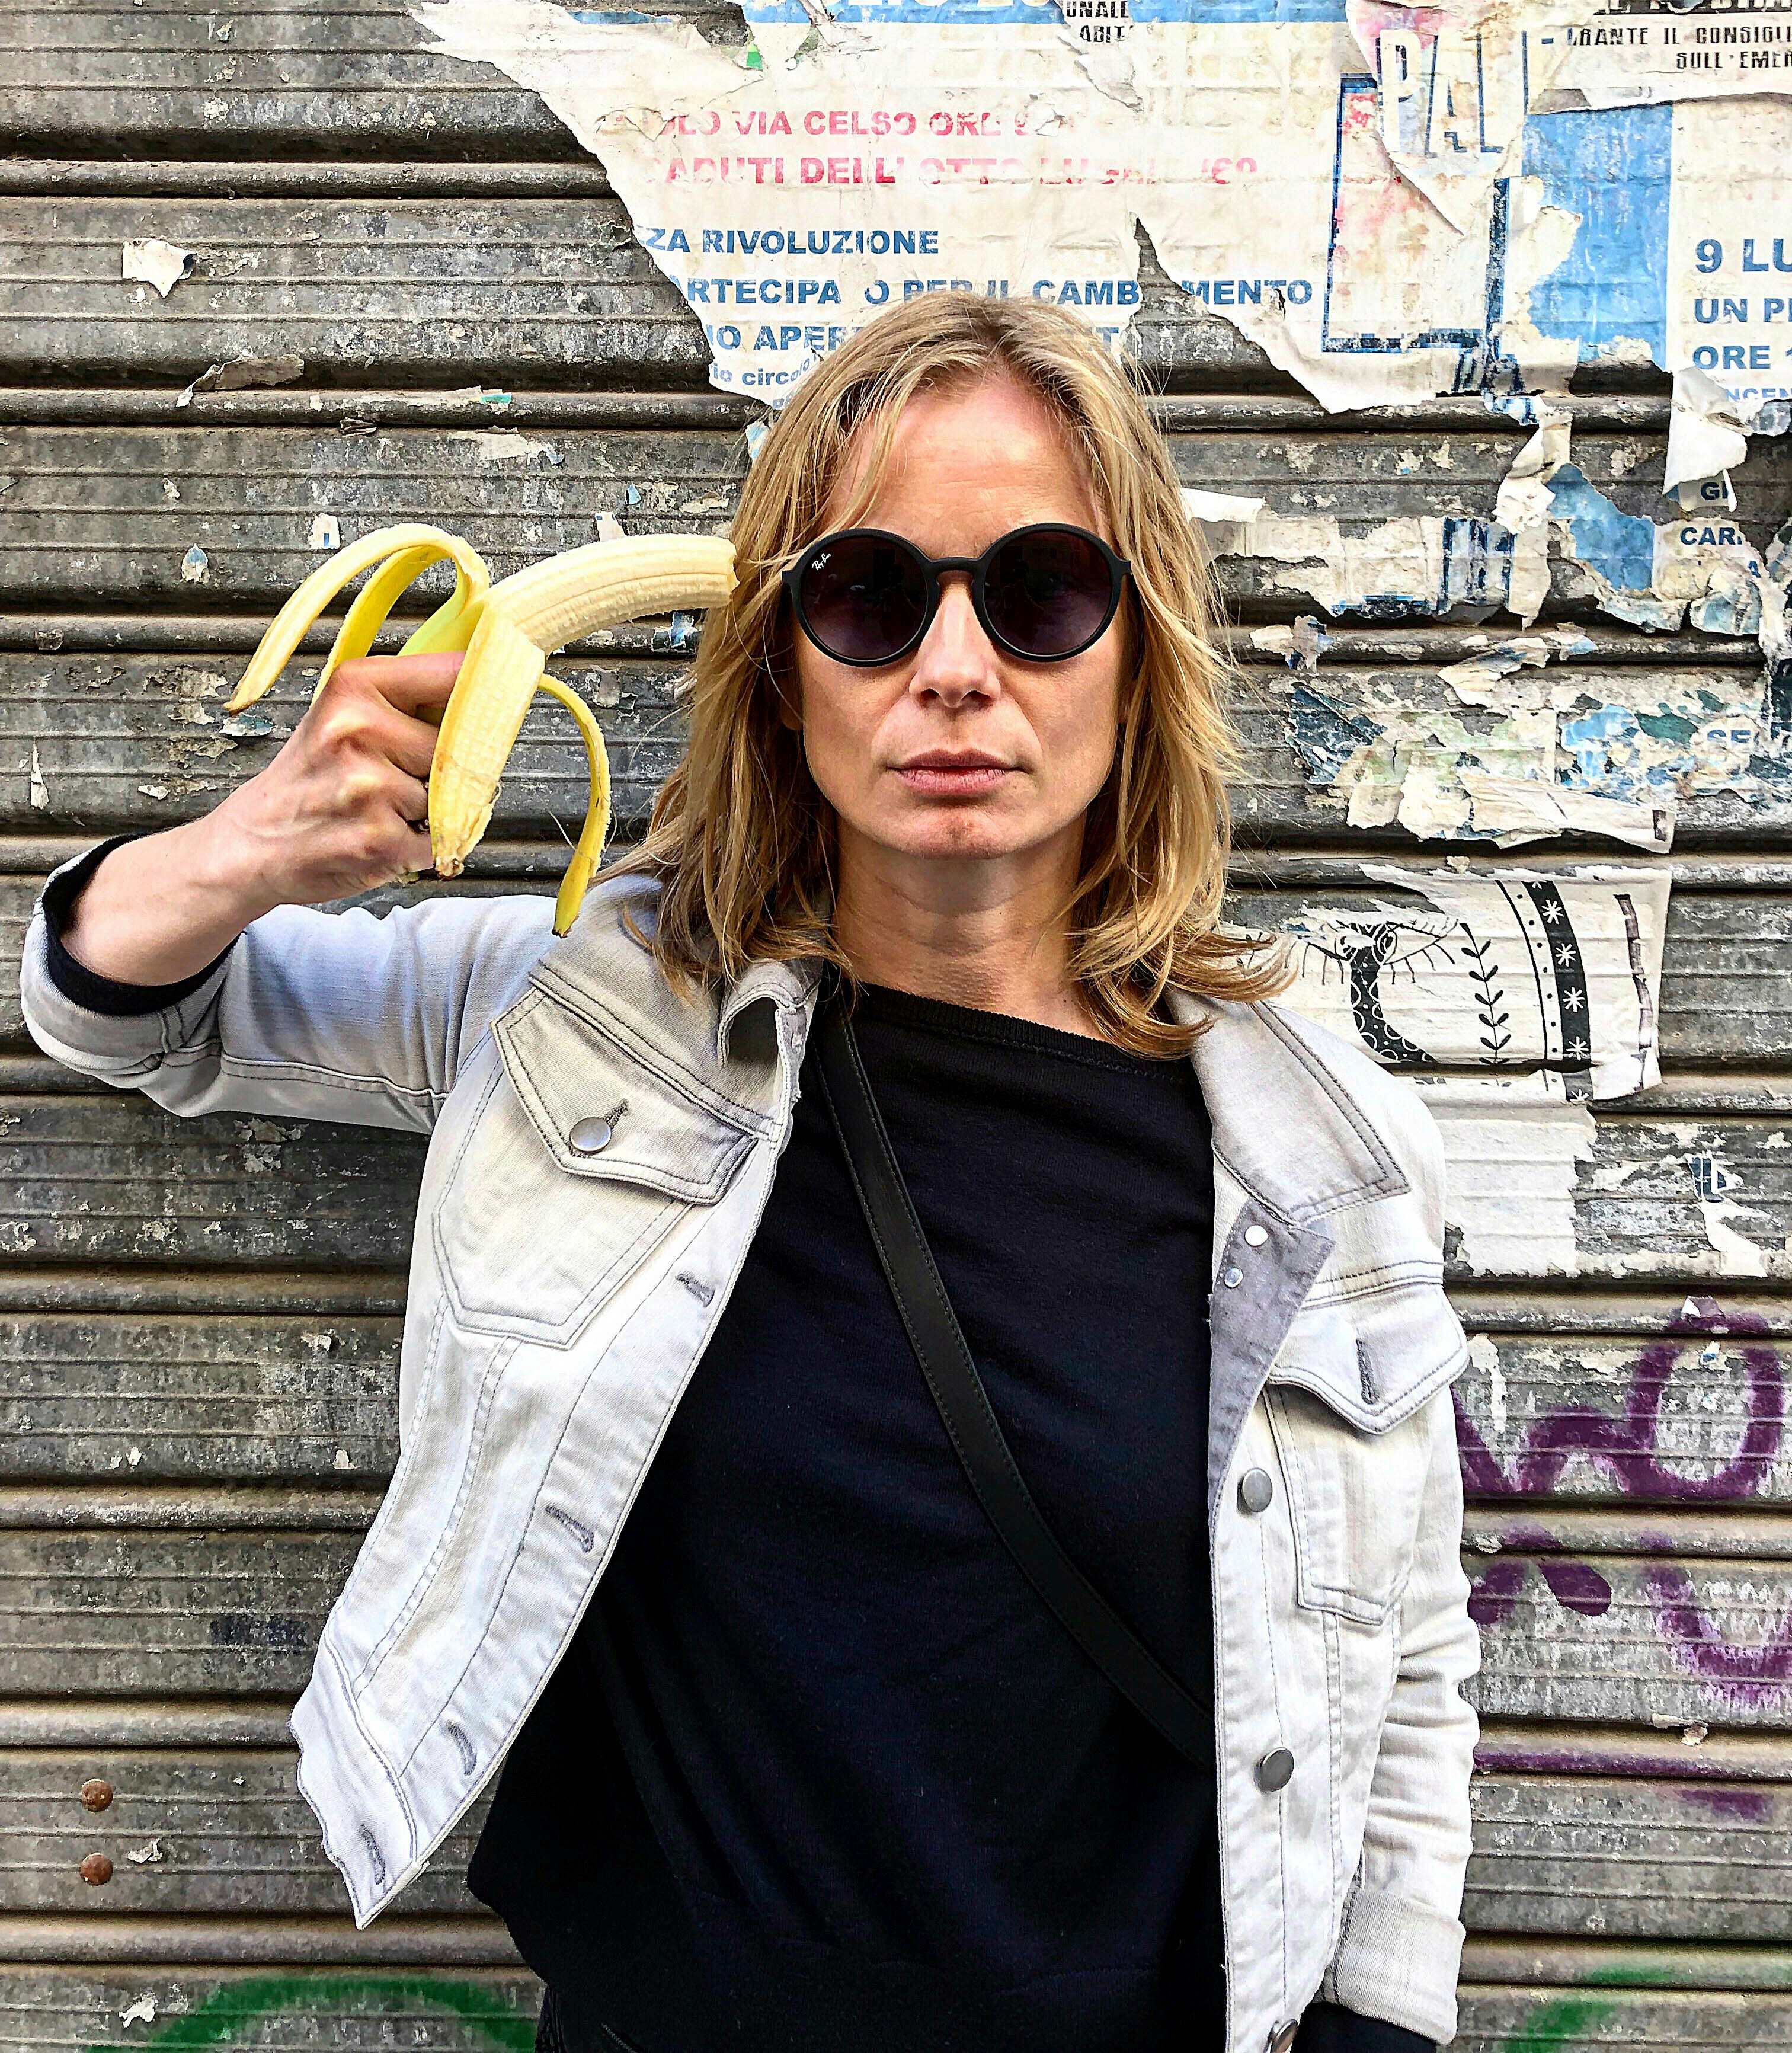 Ban on banana-based artwork at Polish museum fuels banana-based protests